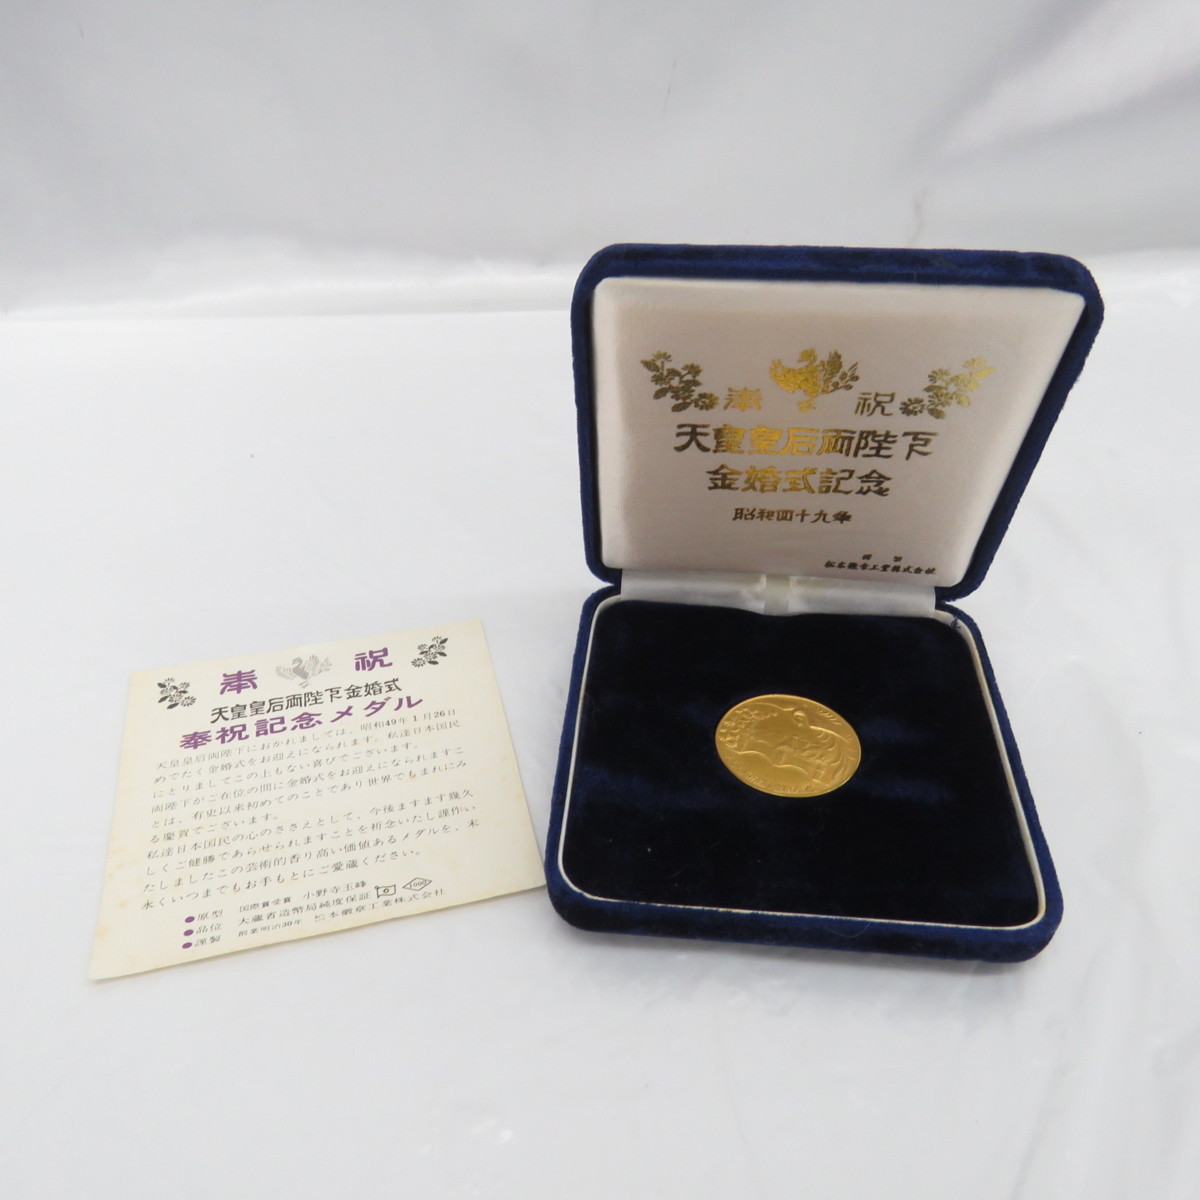 品】天皇皇后両陛下金婚式記念 奉祝記念メダル 純金 昭和49年 1974年